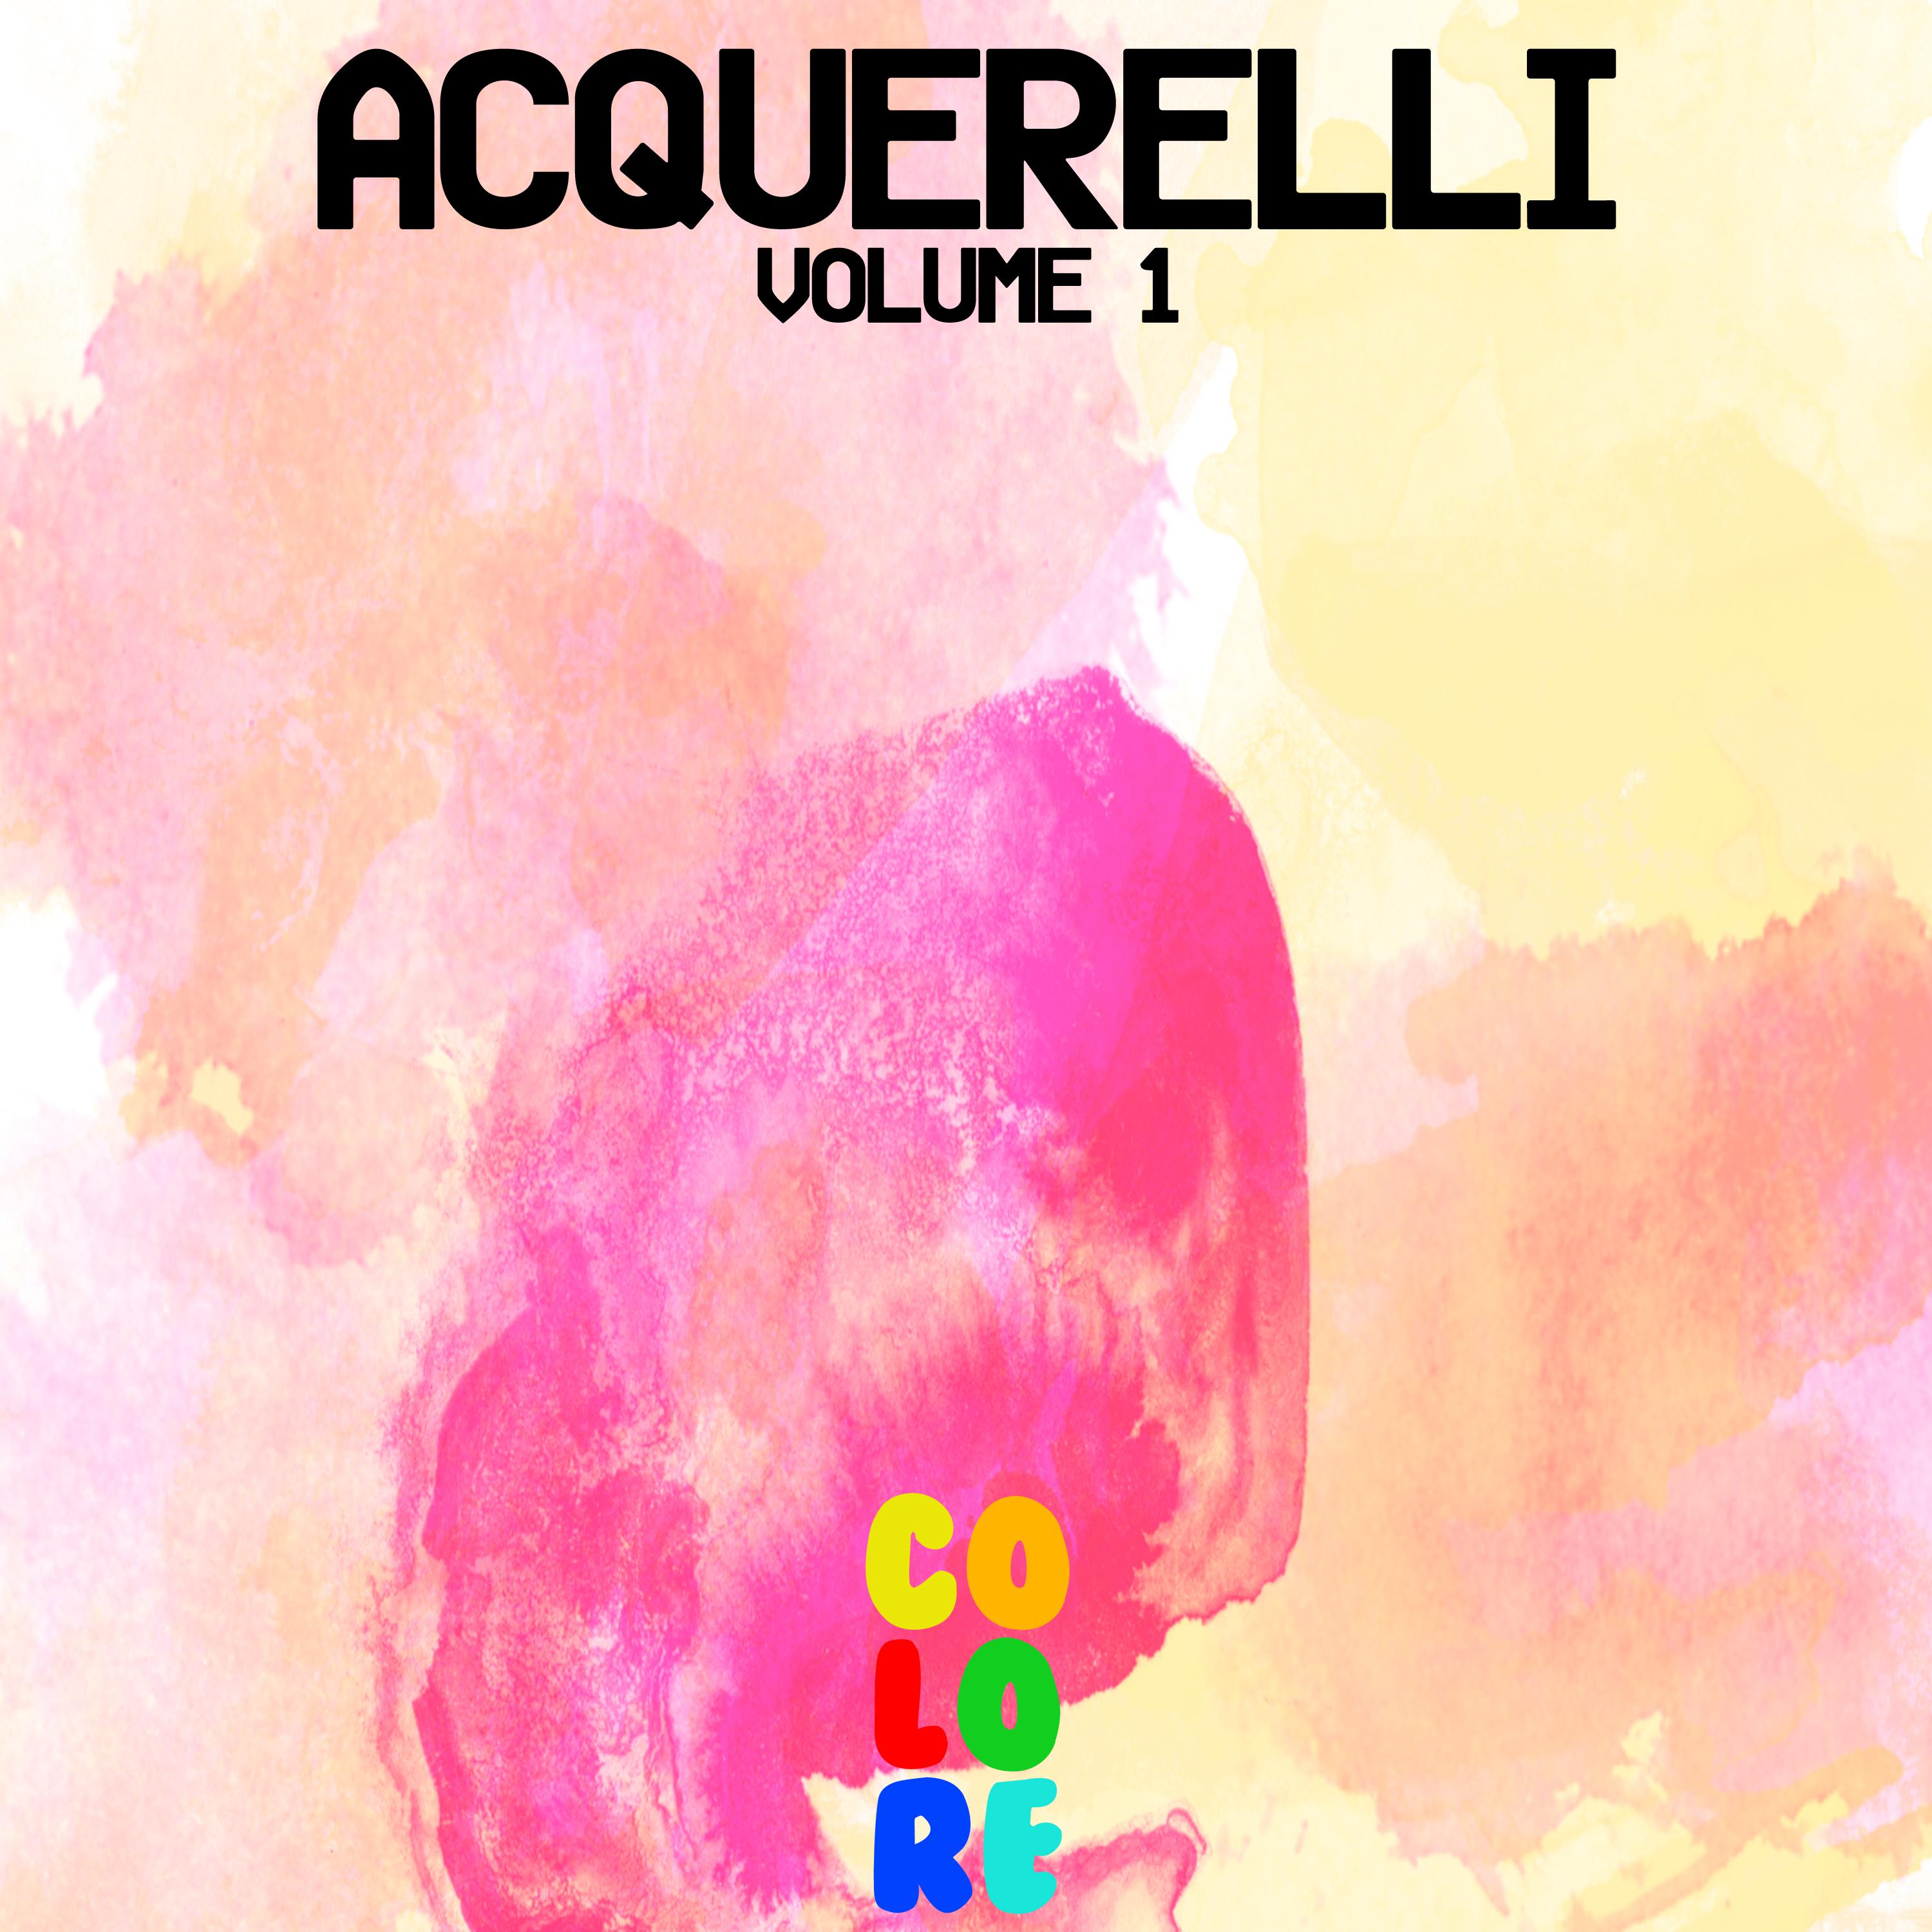 Acquerelli, Vol. 1